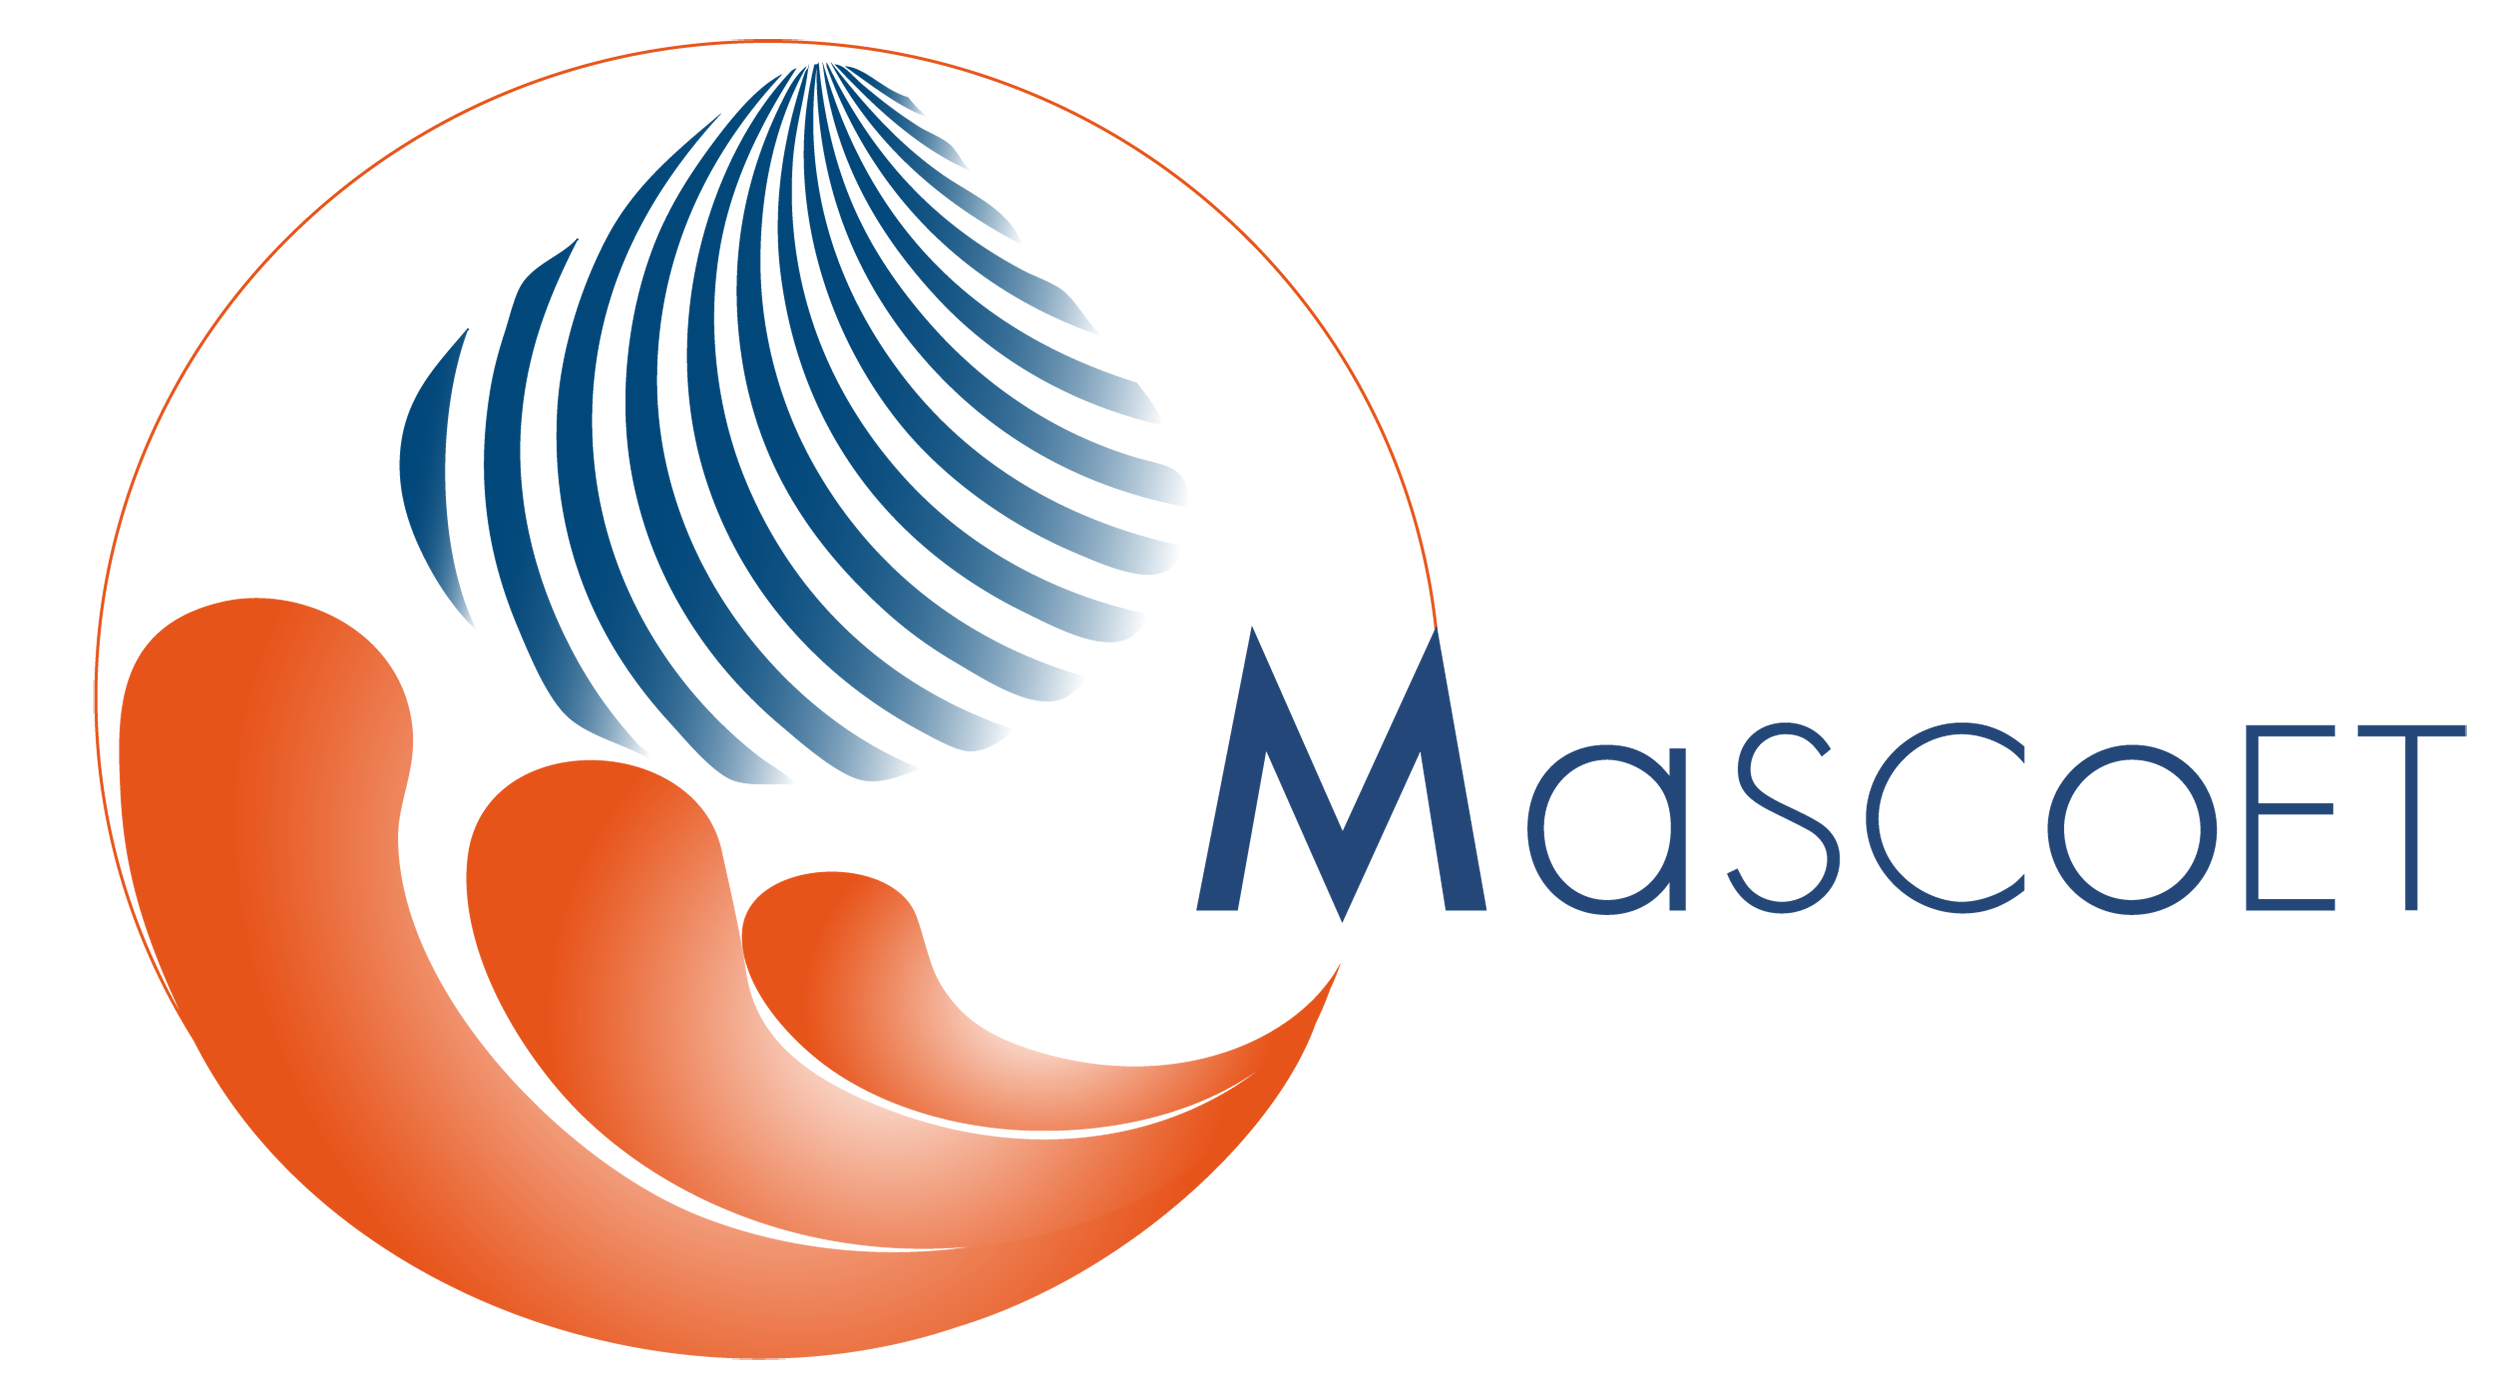 Lire la suite à propos de l’article Création du logo du projet Mascoet